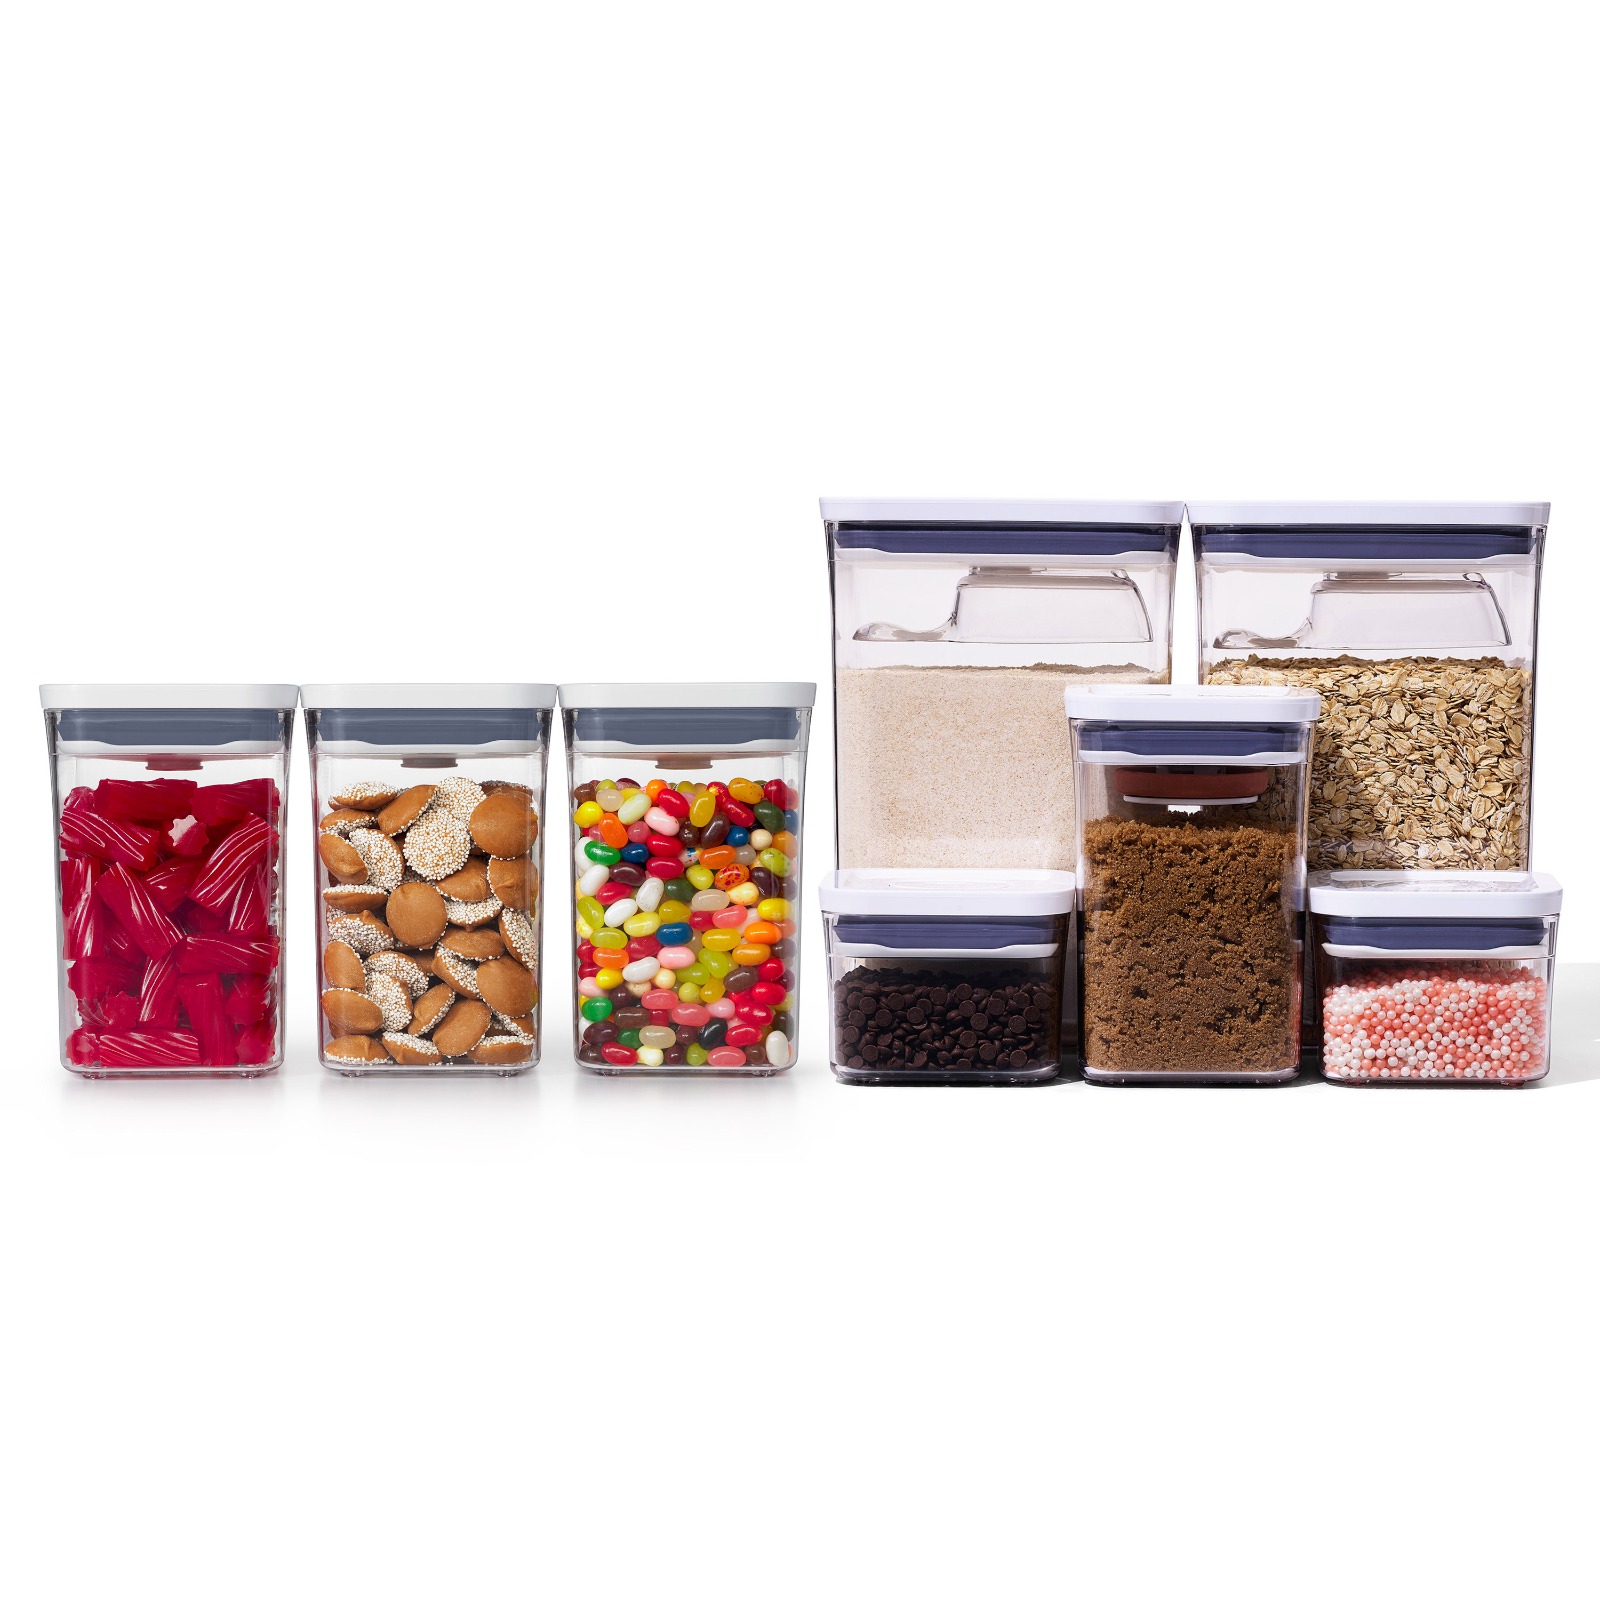 8-Piece POP Container Baking Set & 3-Piece POP Container Value Set Bundle